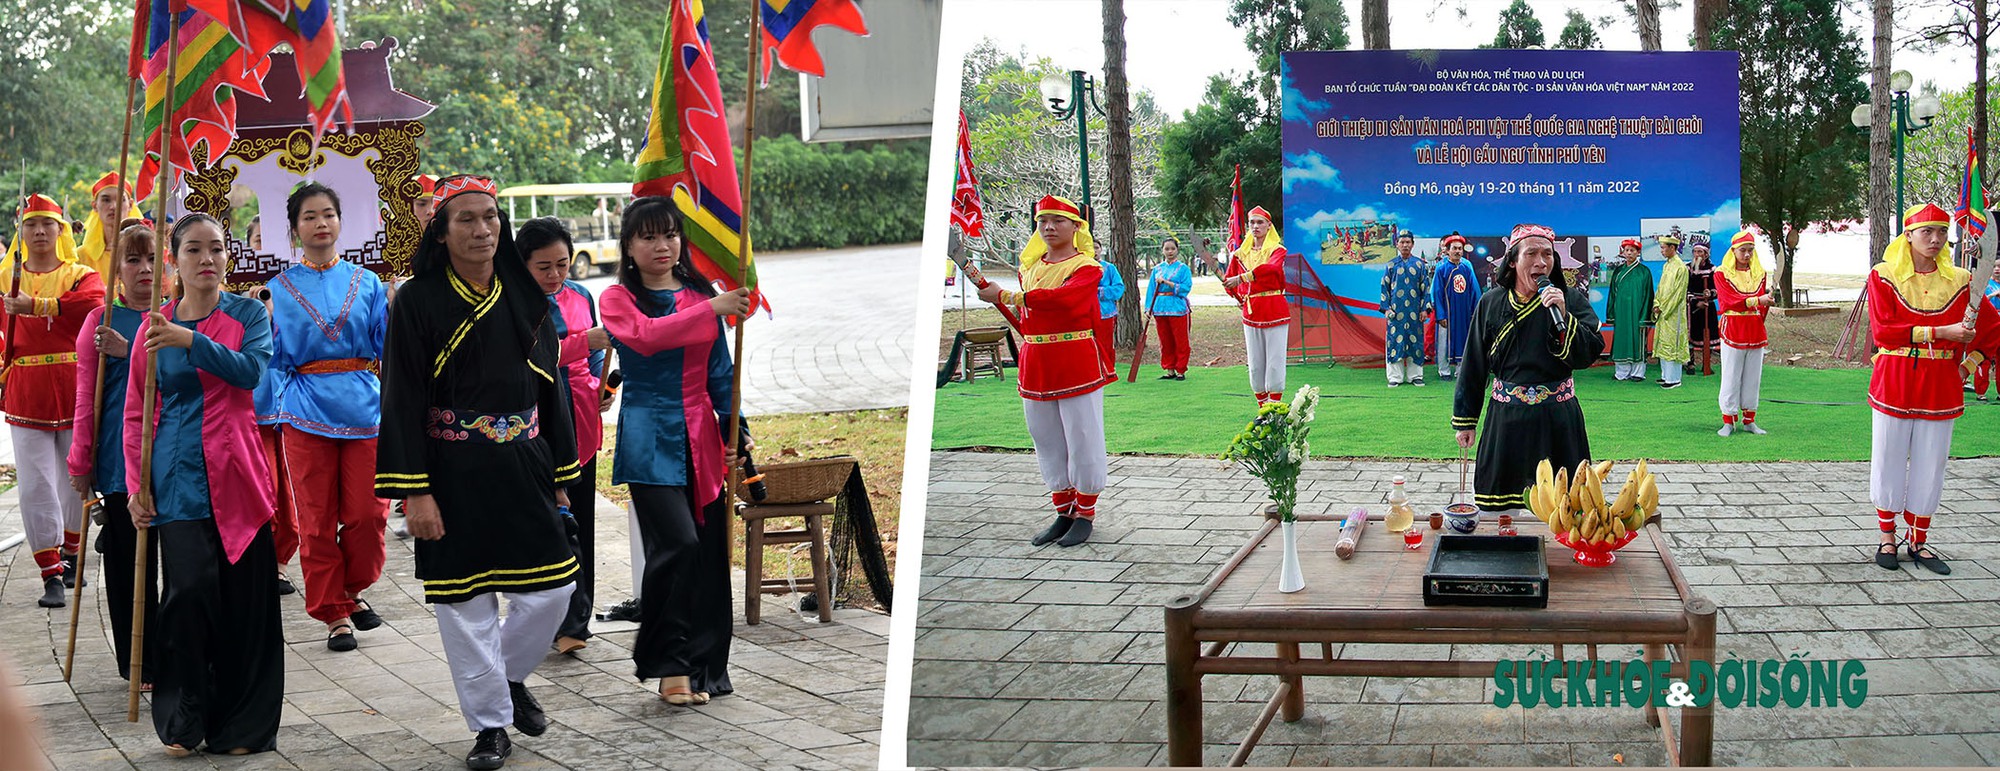 Lễ hội Cầu Ngư - Độc đáo văn hóa biển đảo Việt Nam - Ảnh 1.